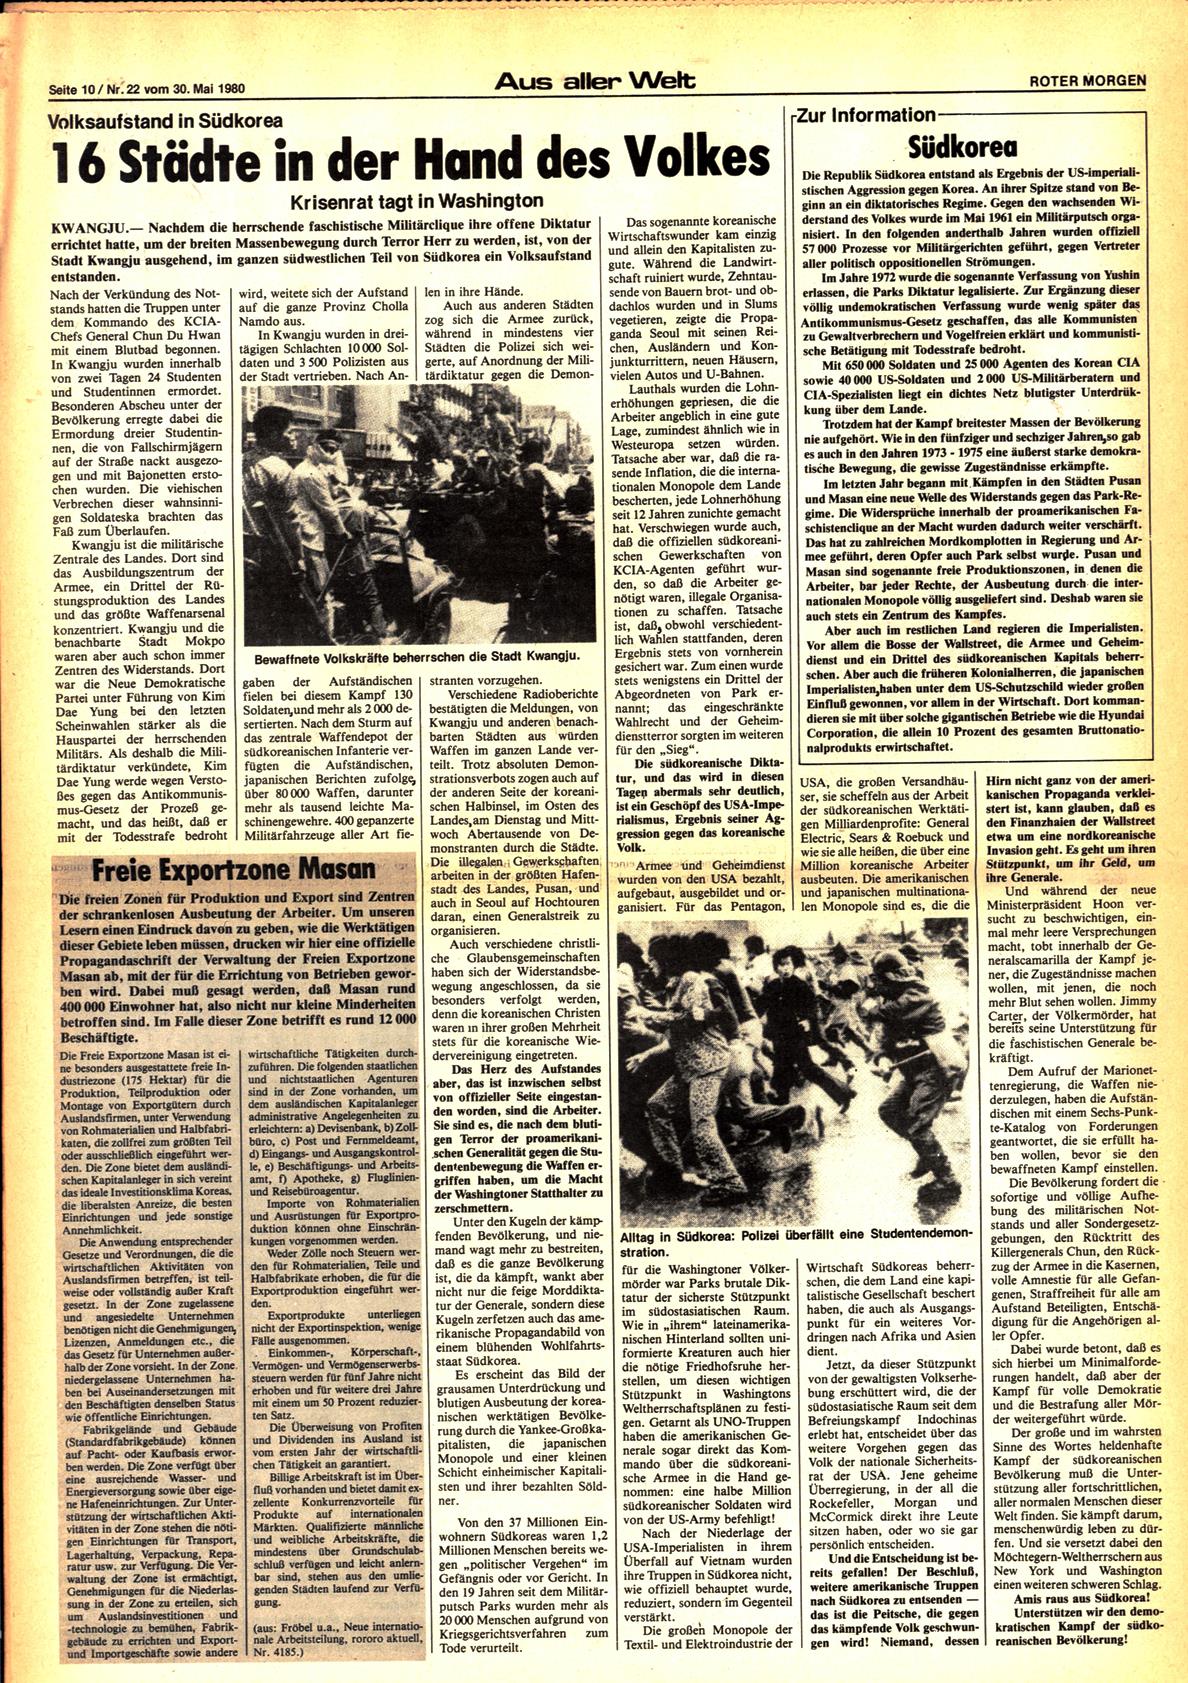 Roter Morgen, 14. Jg., 30. Mai 1980, Nr. 22, Seite 10